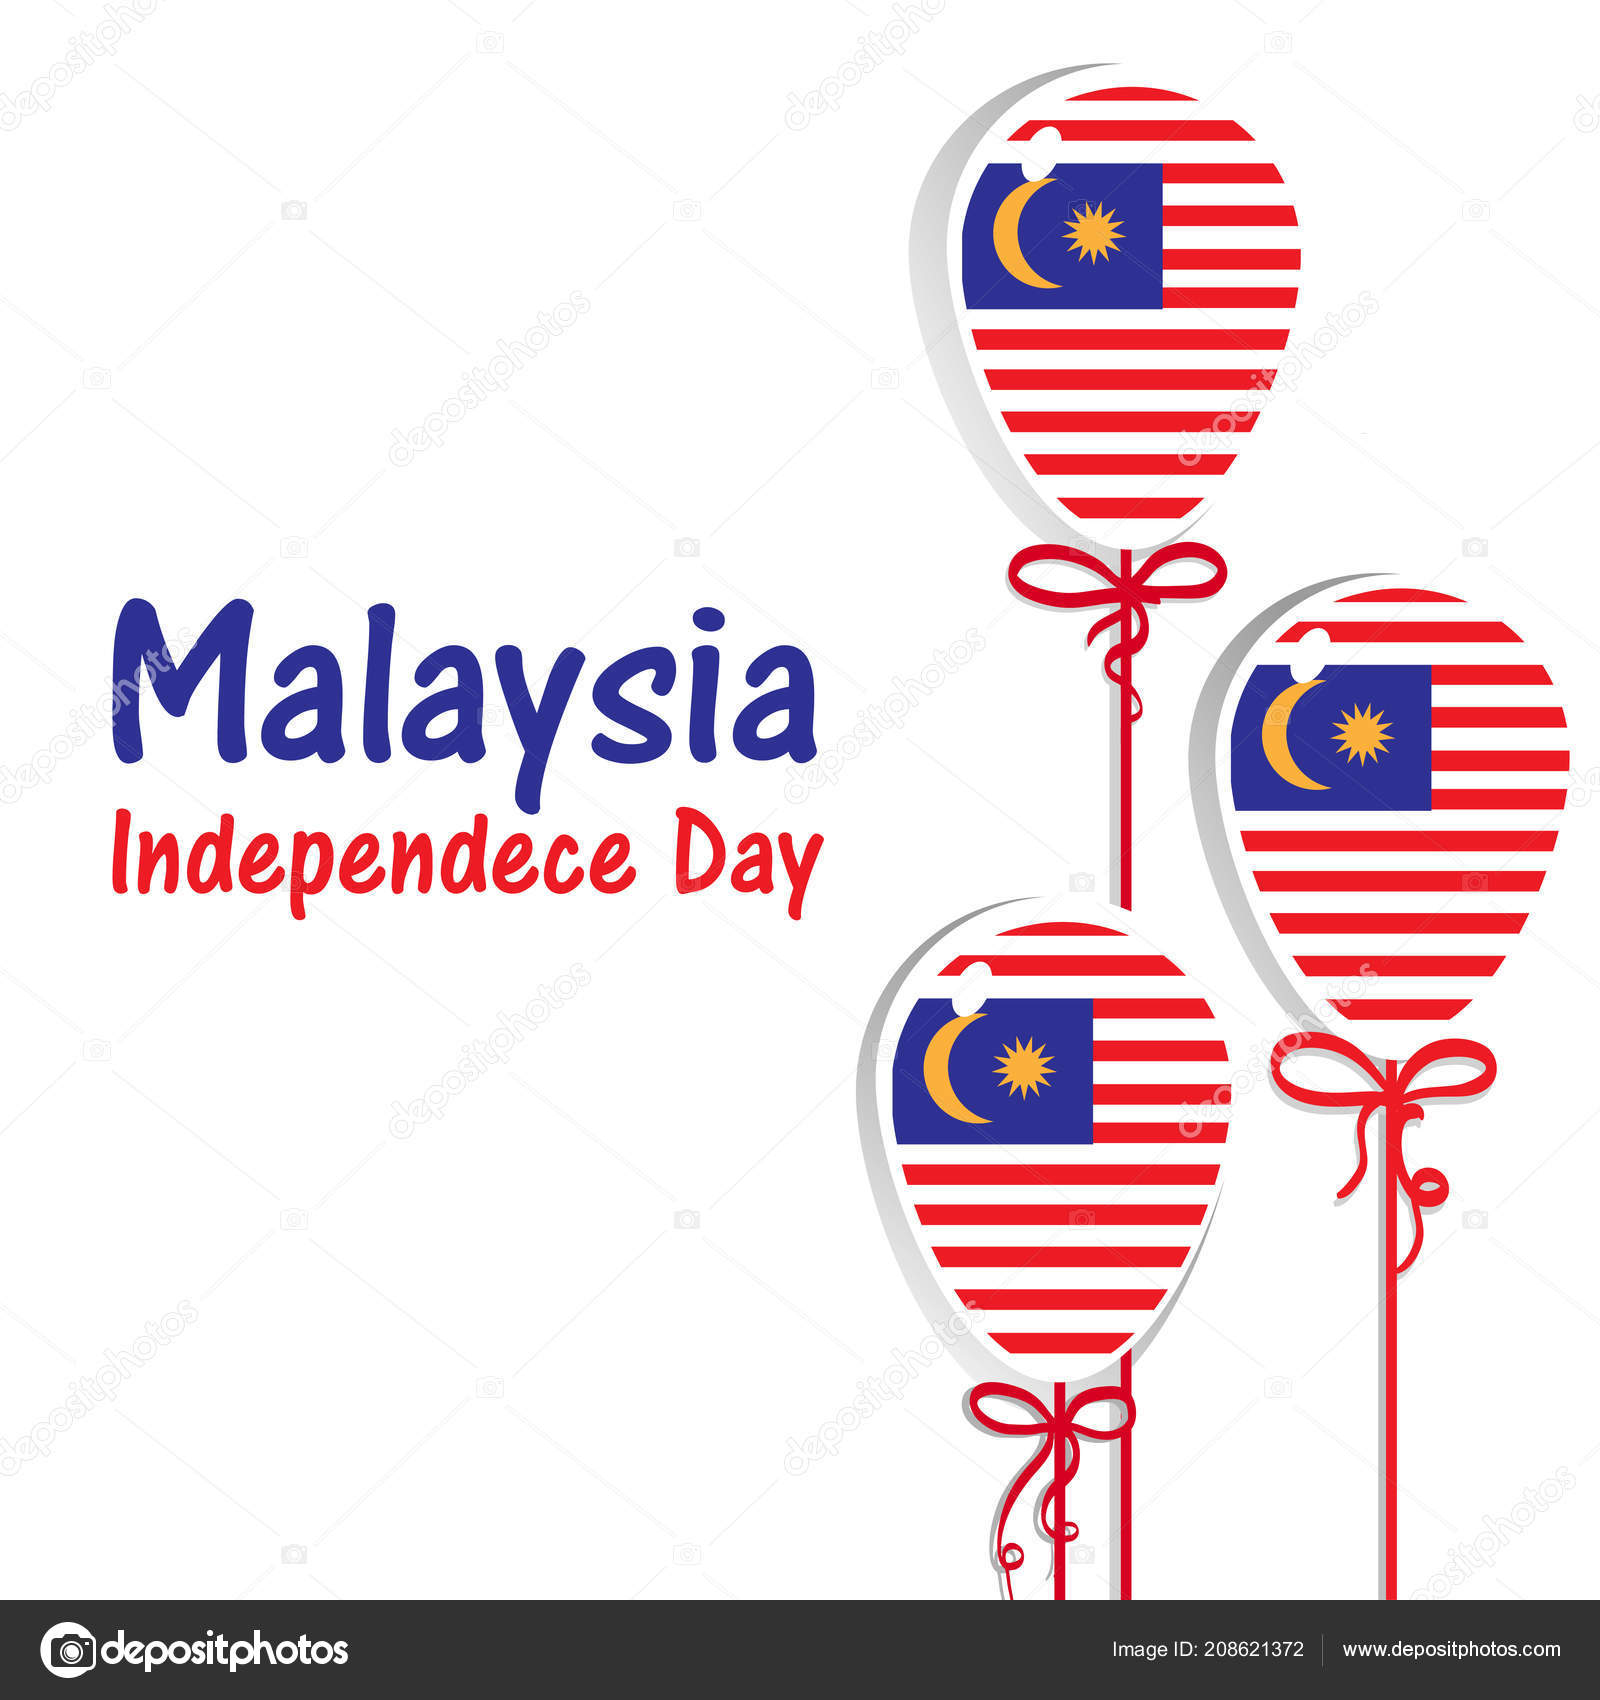 マレーシア独立記念日。マレーシアの国旗。31 日 月 日 — ストックベクター ©Andreeva_Marina 208621372